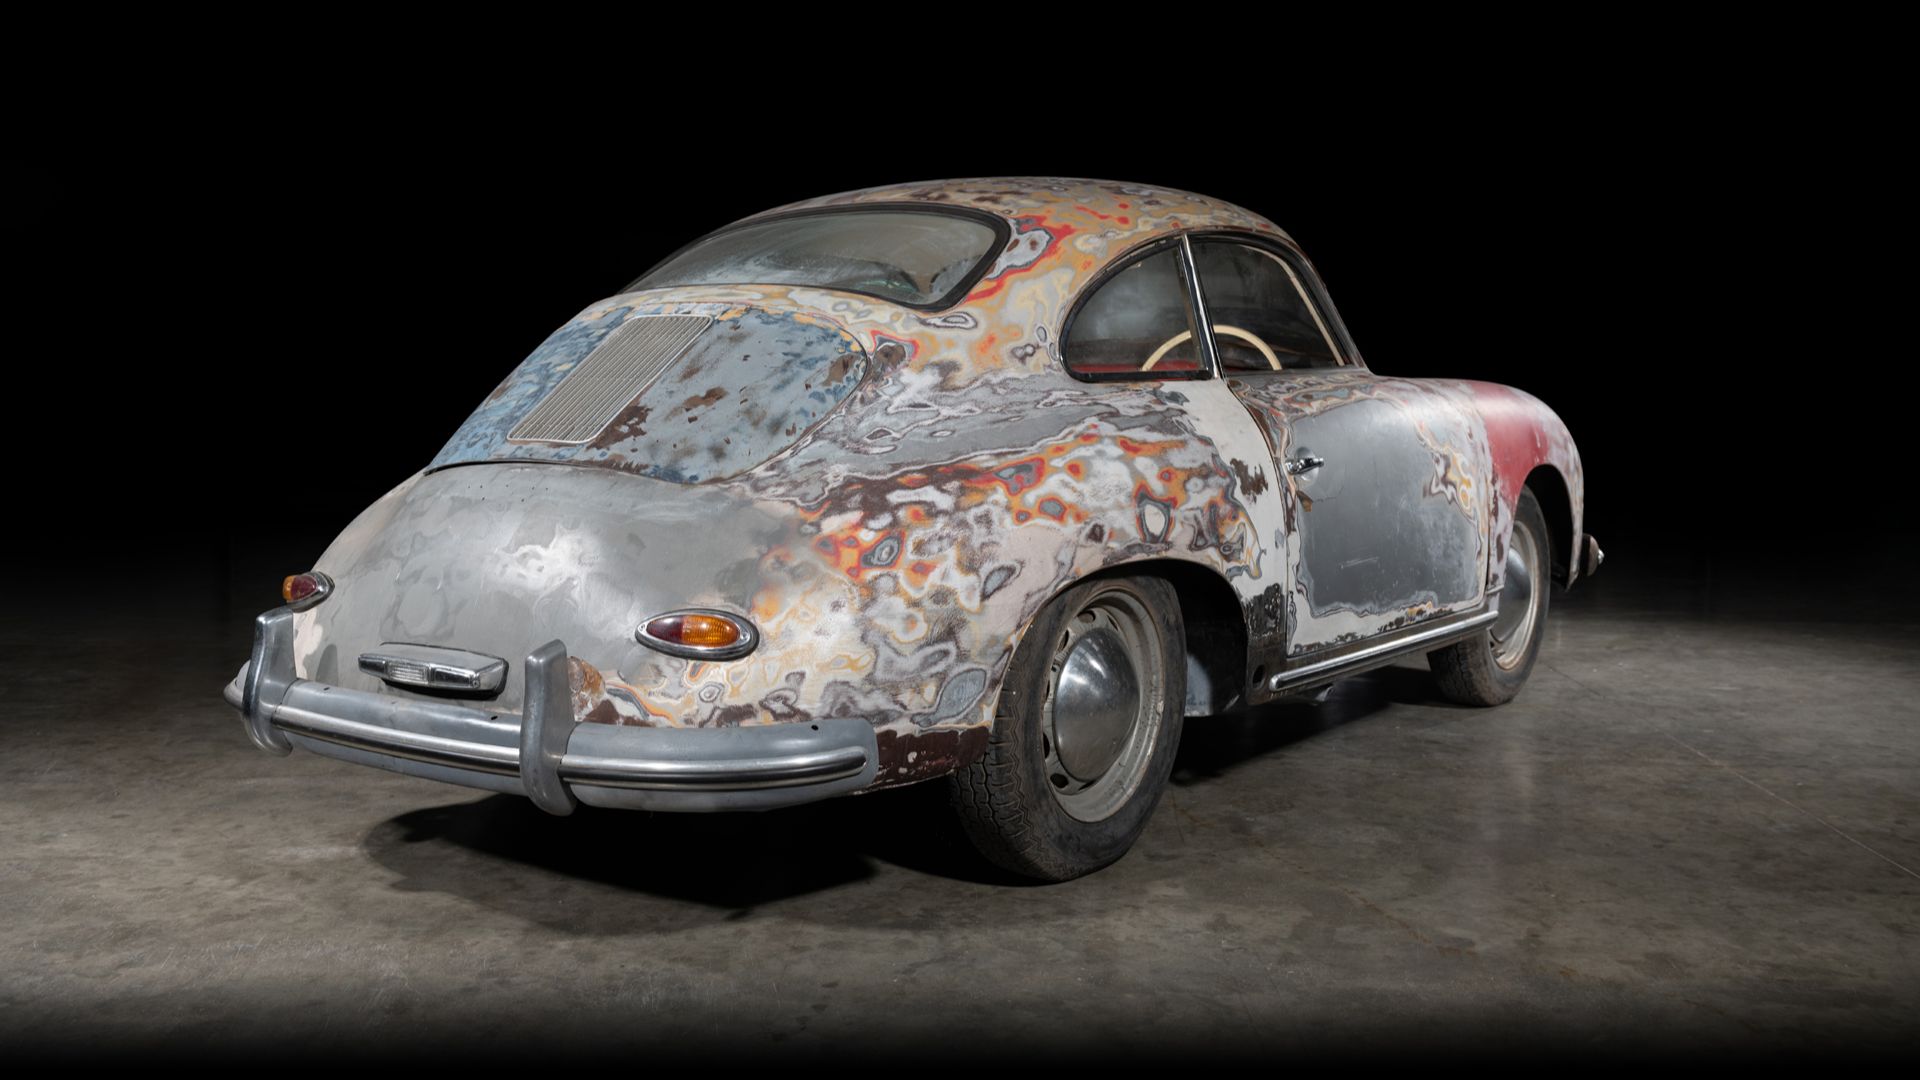 Porsche 356 restoration